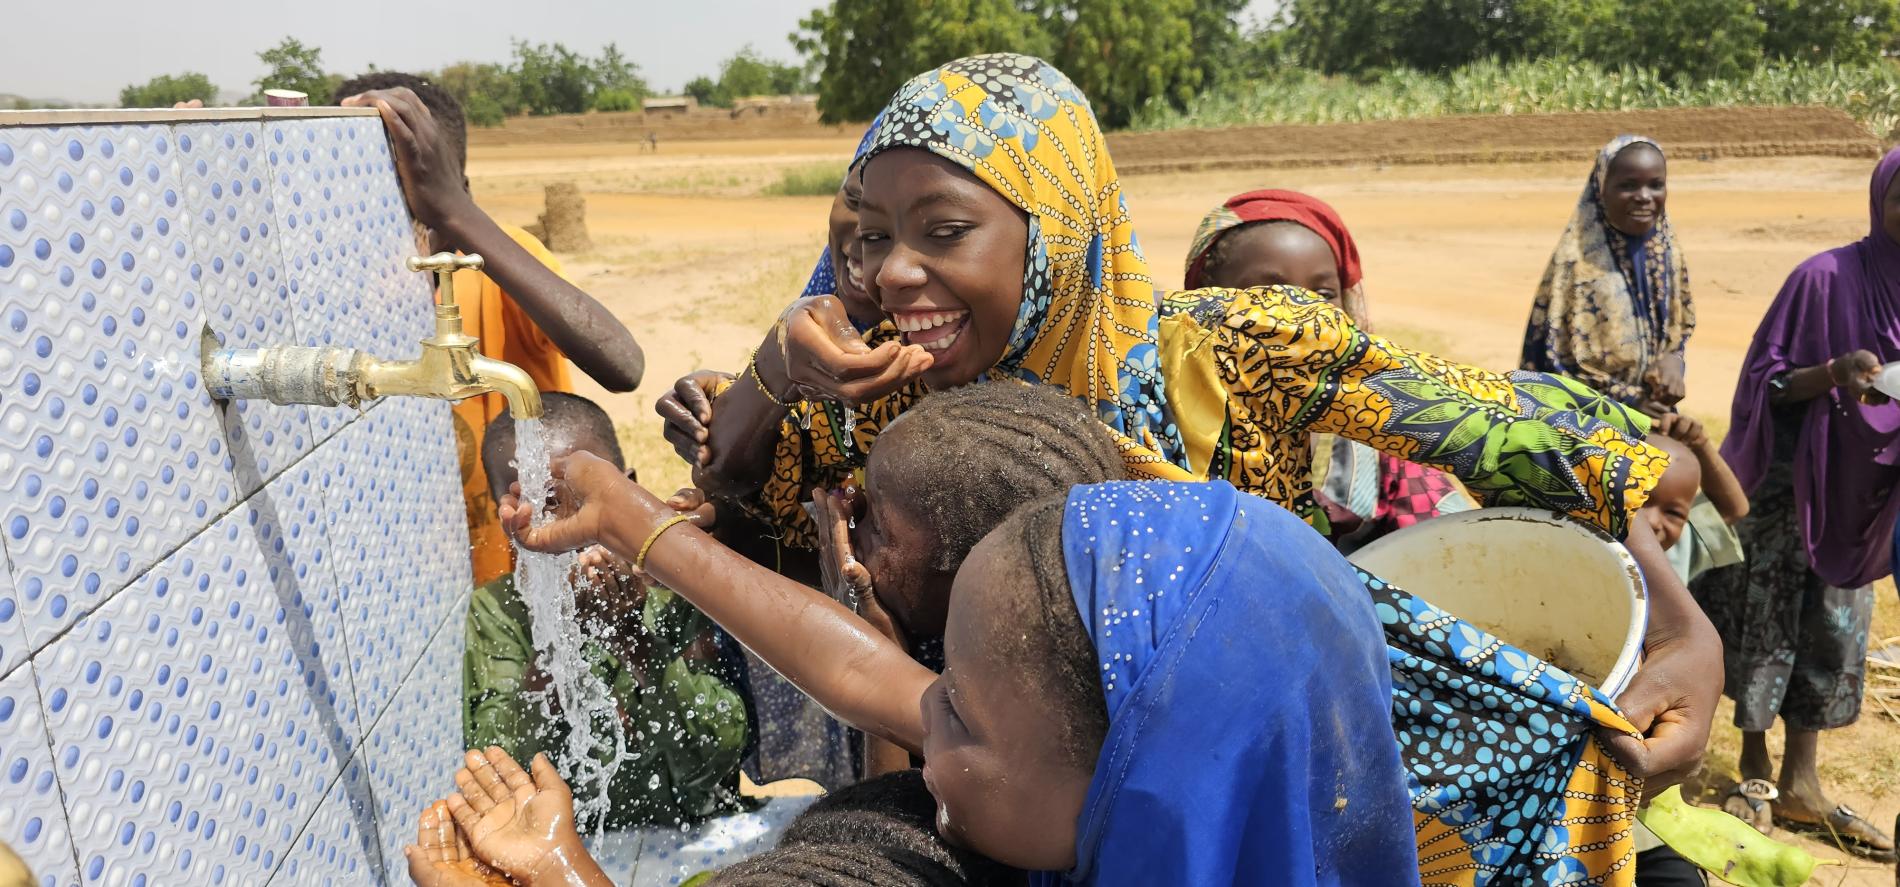 Accès à l’eau potable des communautés : l’OMS met à disposition six (6) Postes d’eau autonomes (PEA) dans cinq villages du Niger grâce au financement de l’Union Européenne